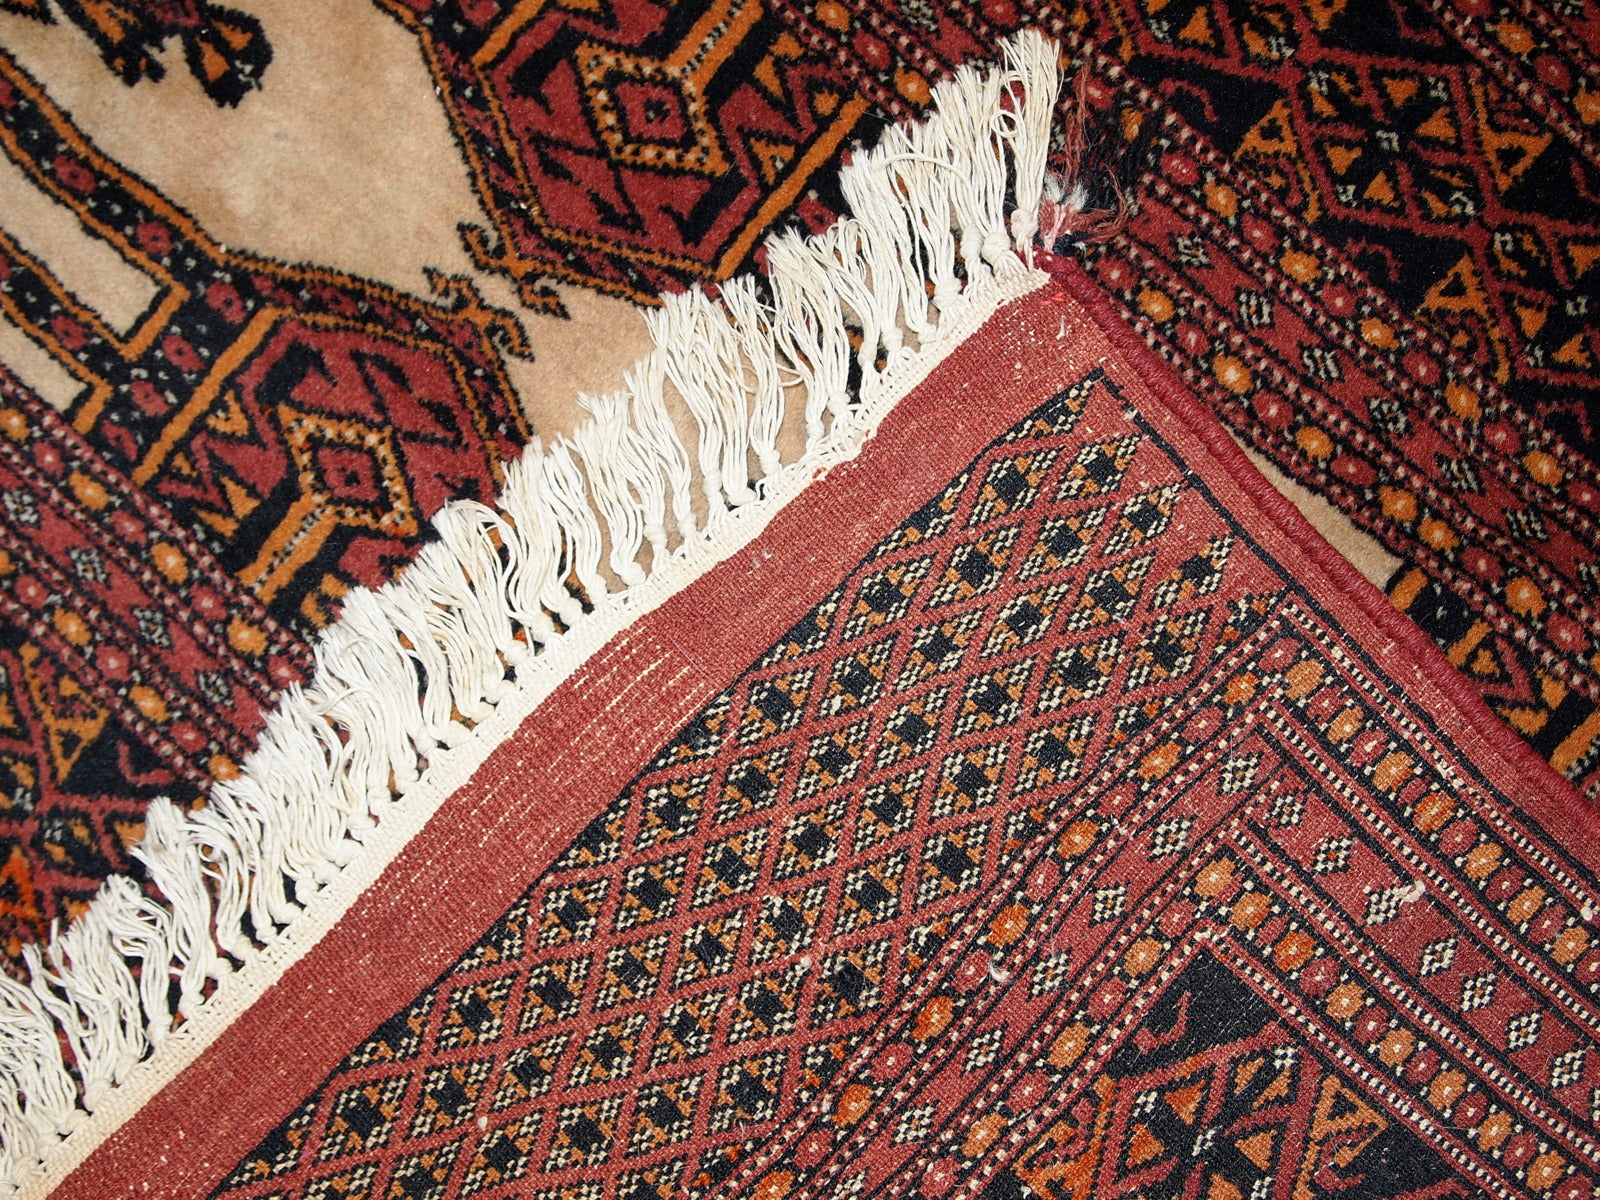 Back View of Vintage Turkmen Rug - Shows Underside